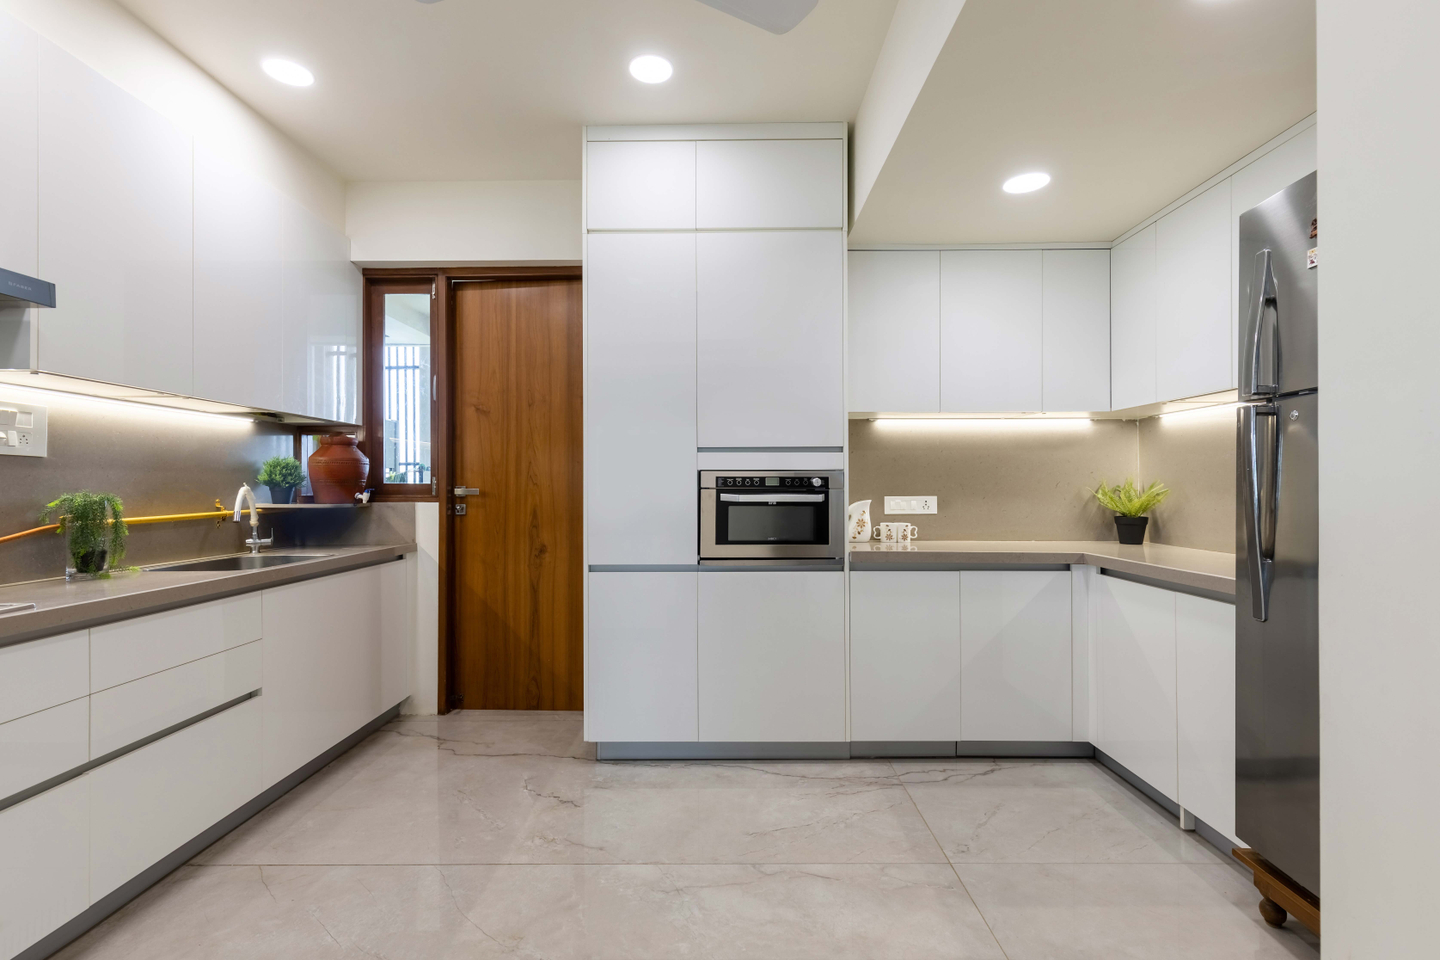 Modern Modular Indian Kitchen Design With Loft Storage